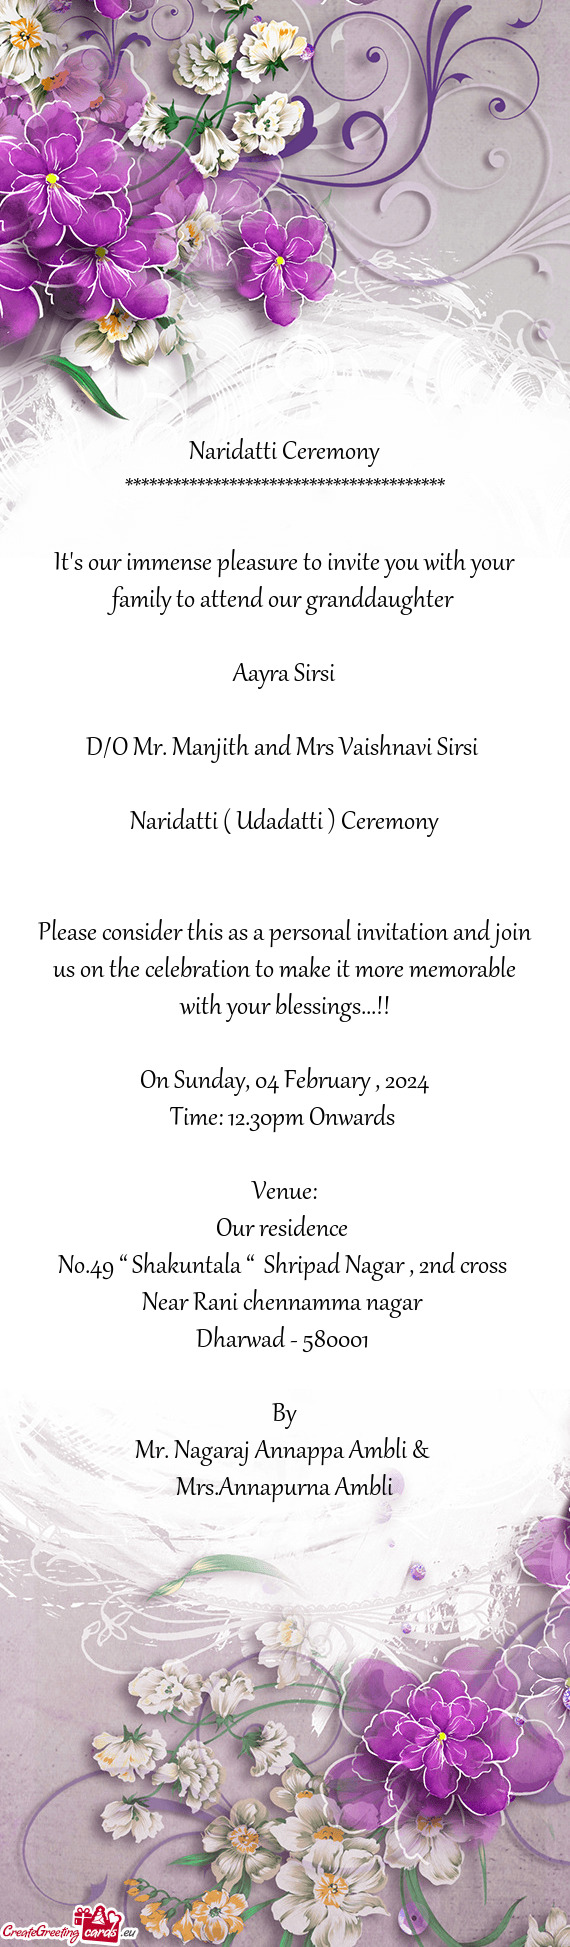 D/O Mr. Manjith and Mrs Vaishnavi Sirsi